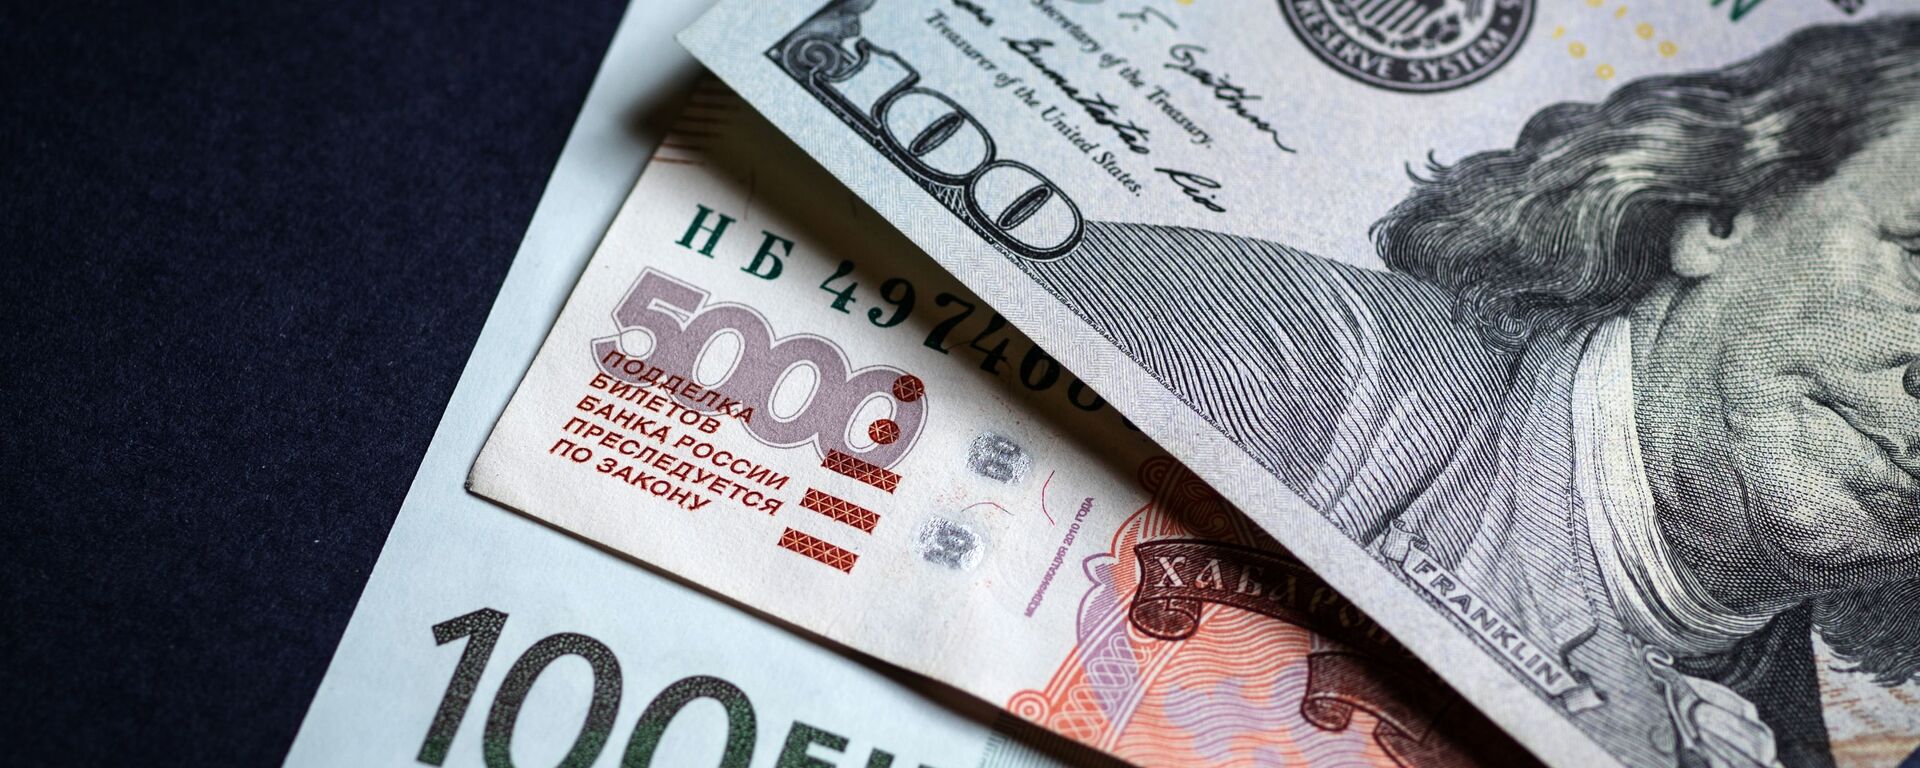 Денежные купюры: евро, доллары и российские рубли. Архивное фото - Sputnik Кыргызстан, 1920, 26.07.2021